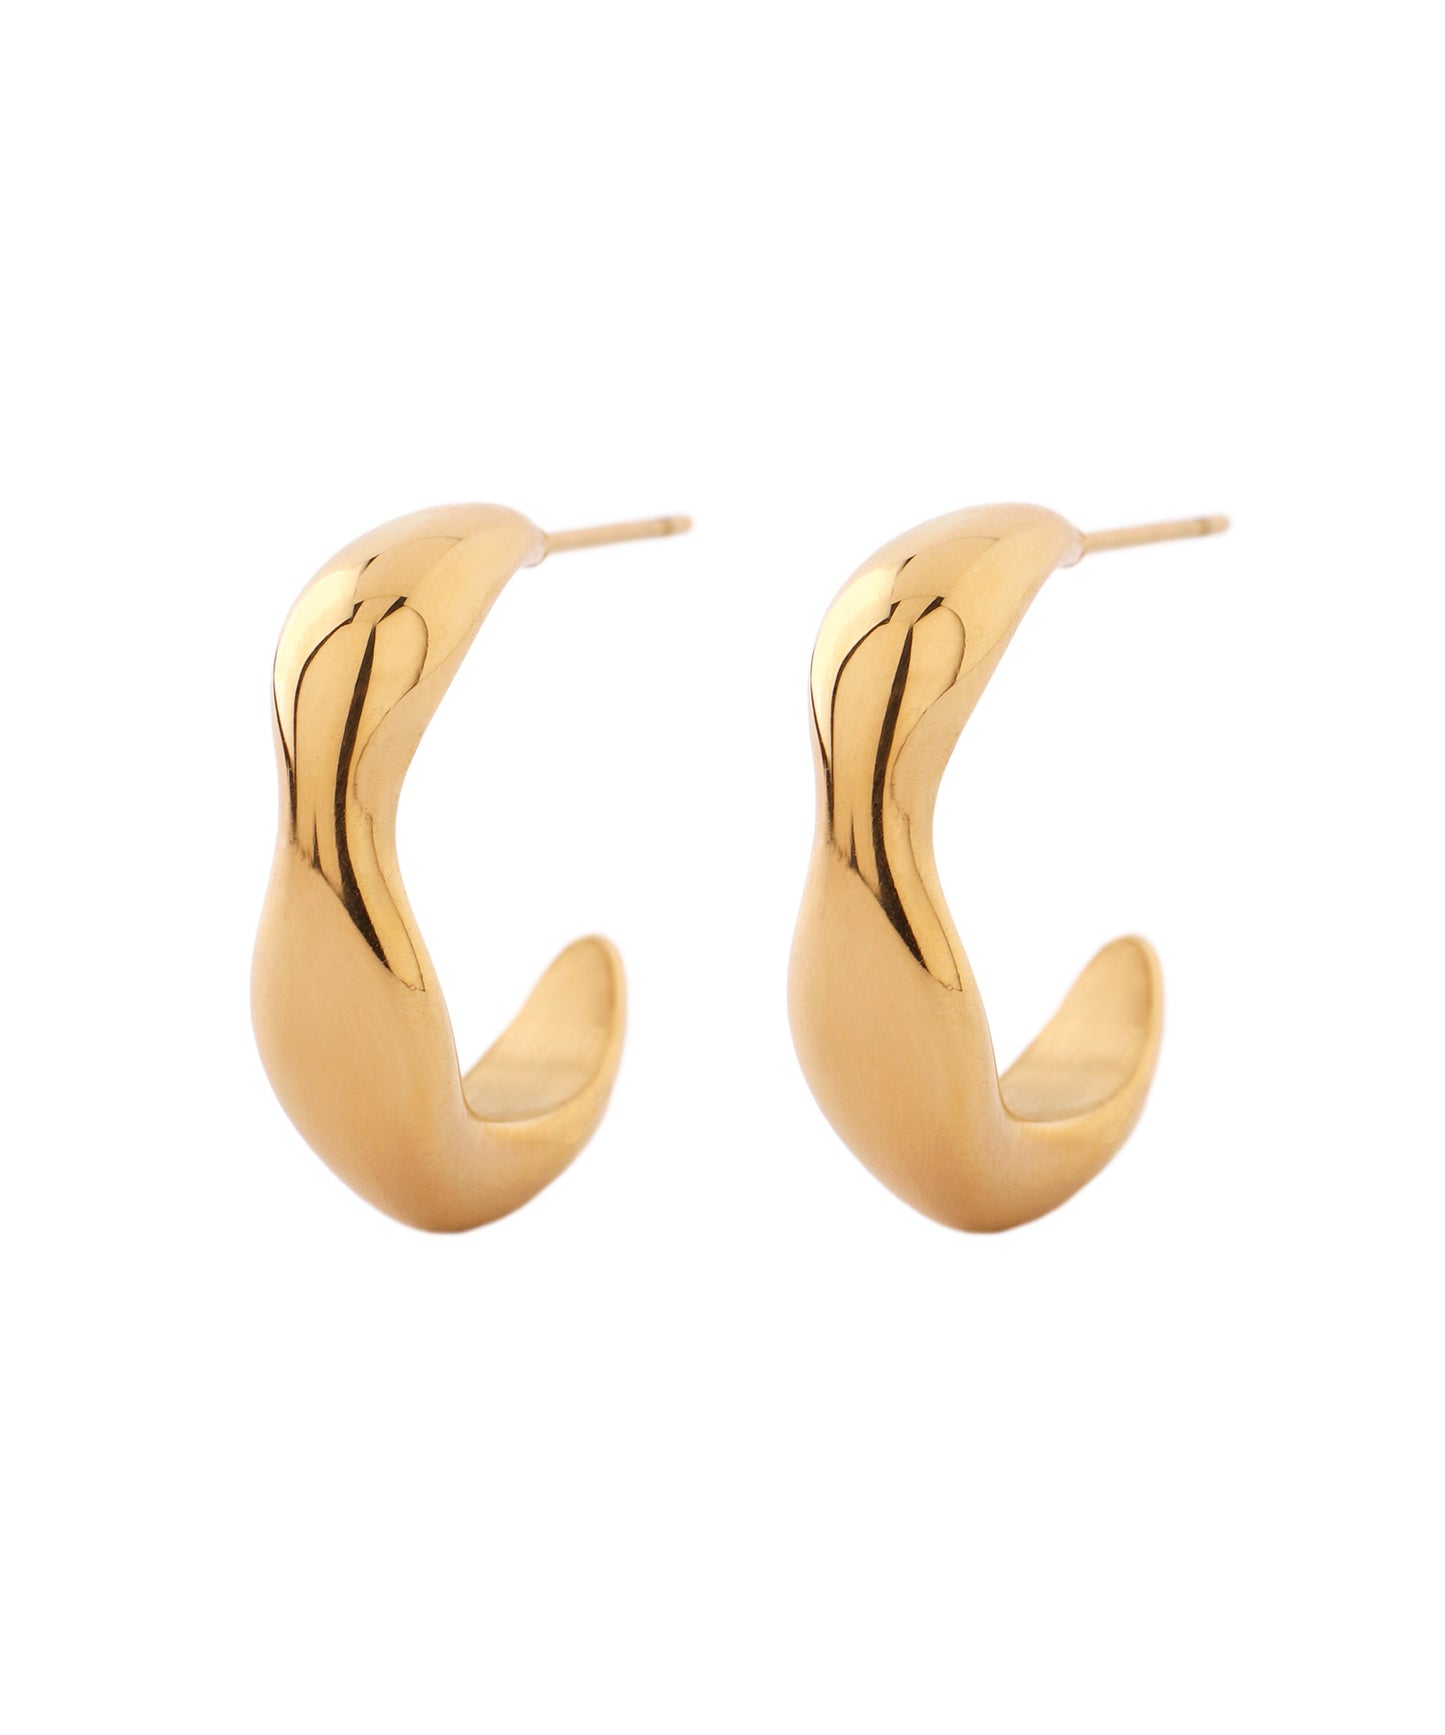 【Stainless Seel IP】Nuance Hoops Earrings